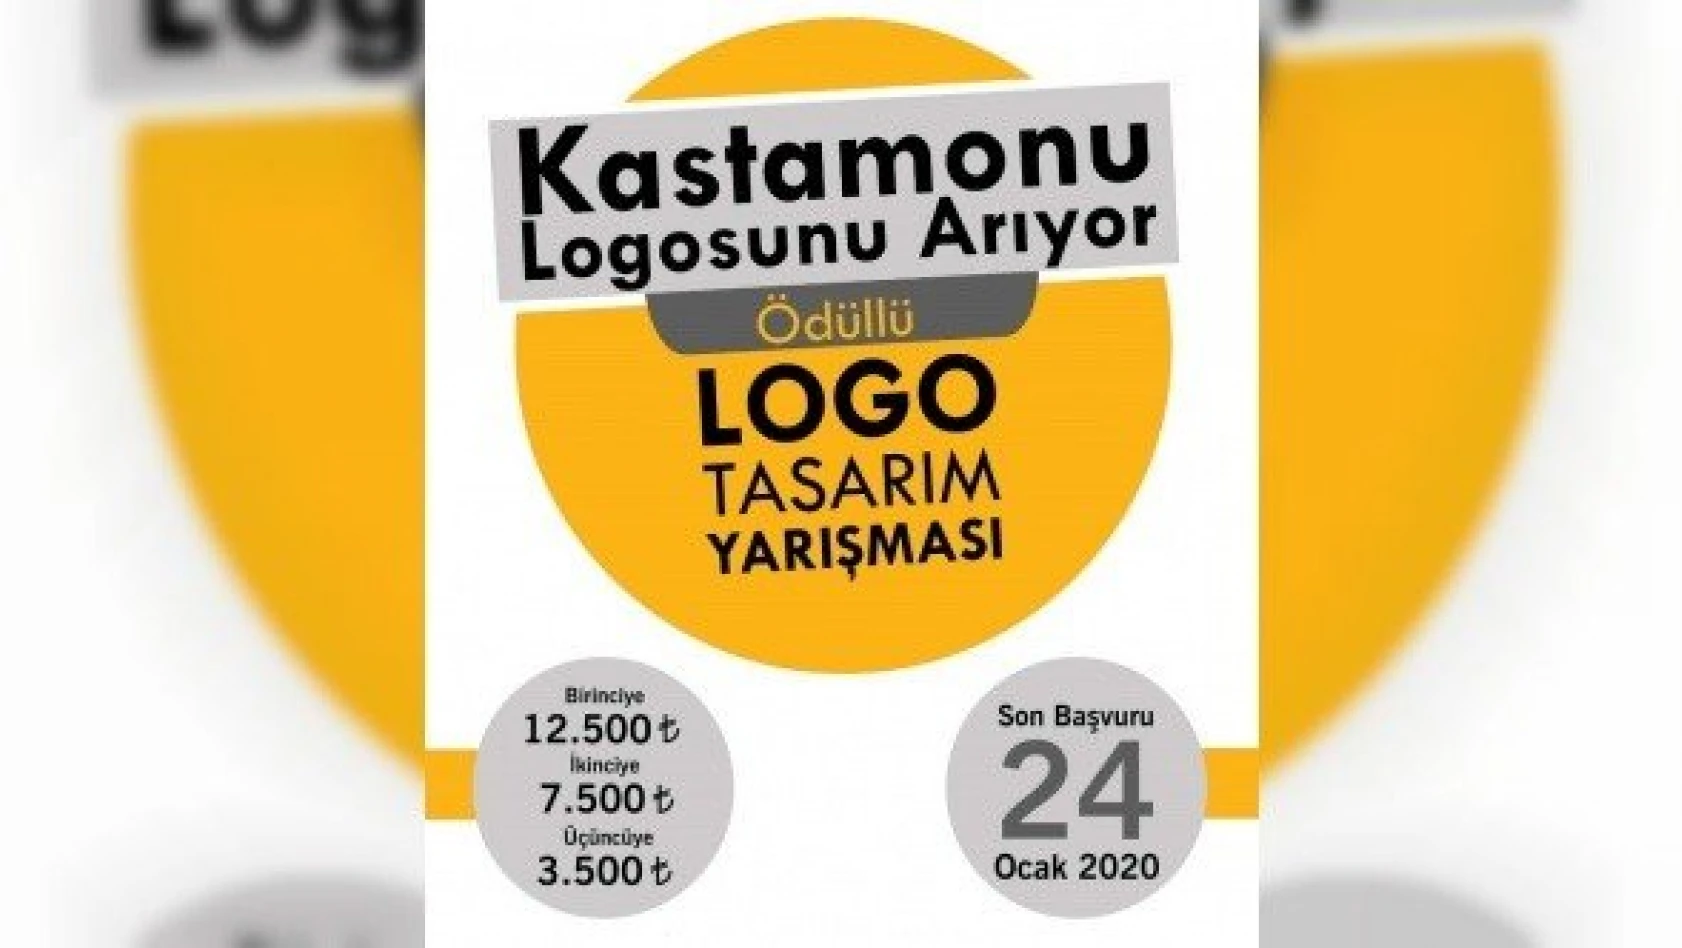 Kastamonu Logosu için yarışma düzenleniyor